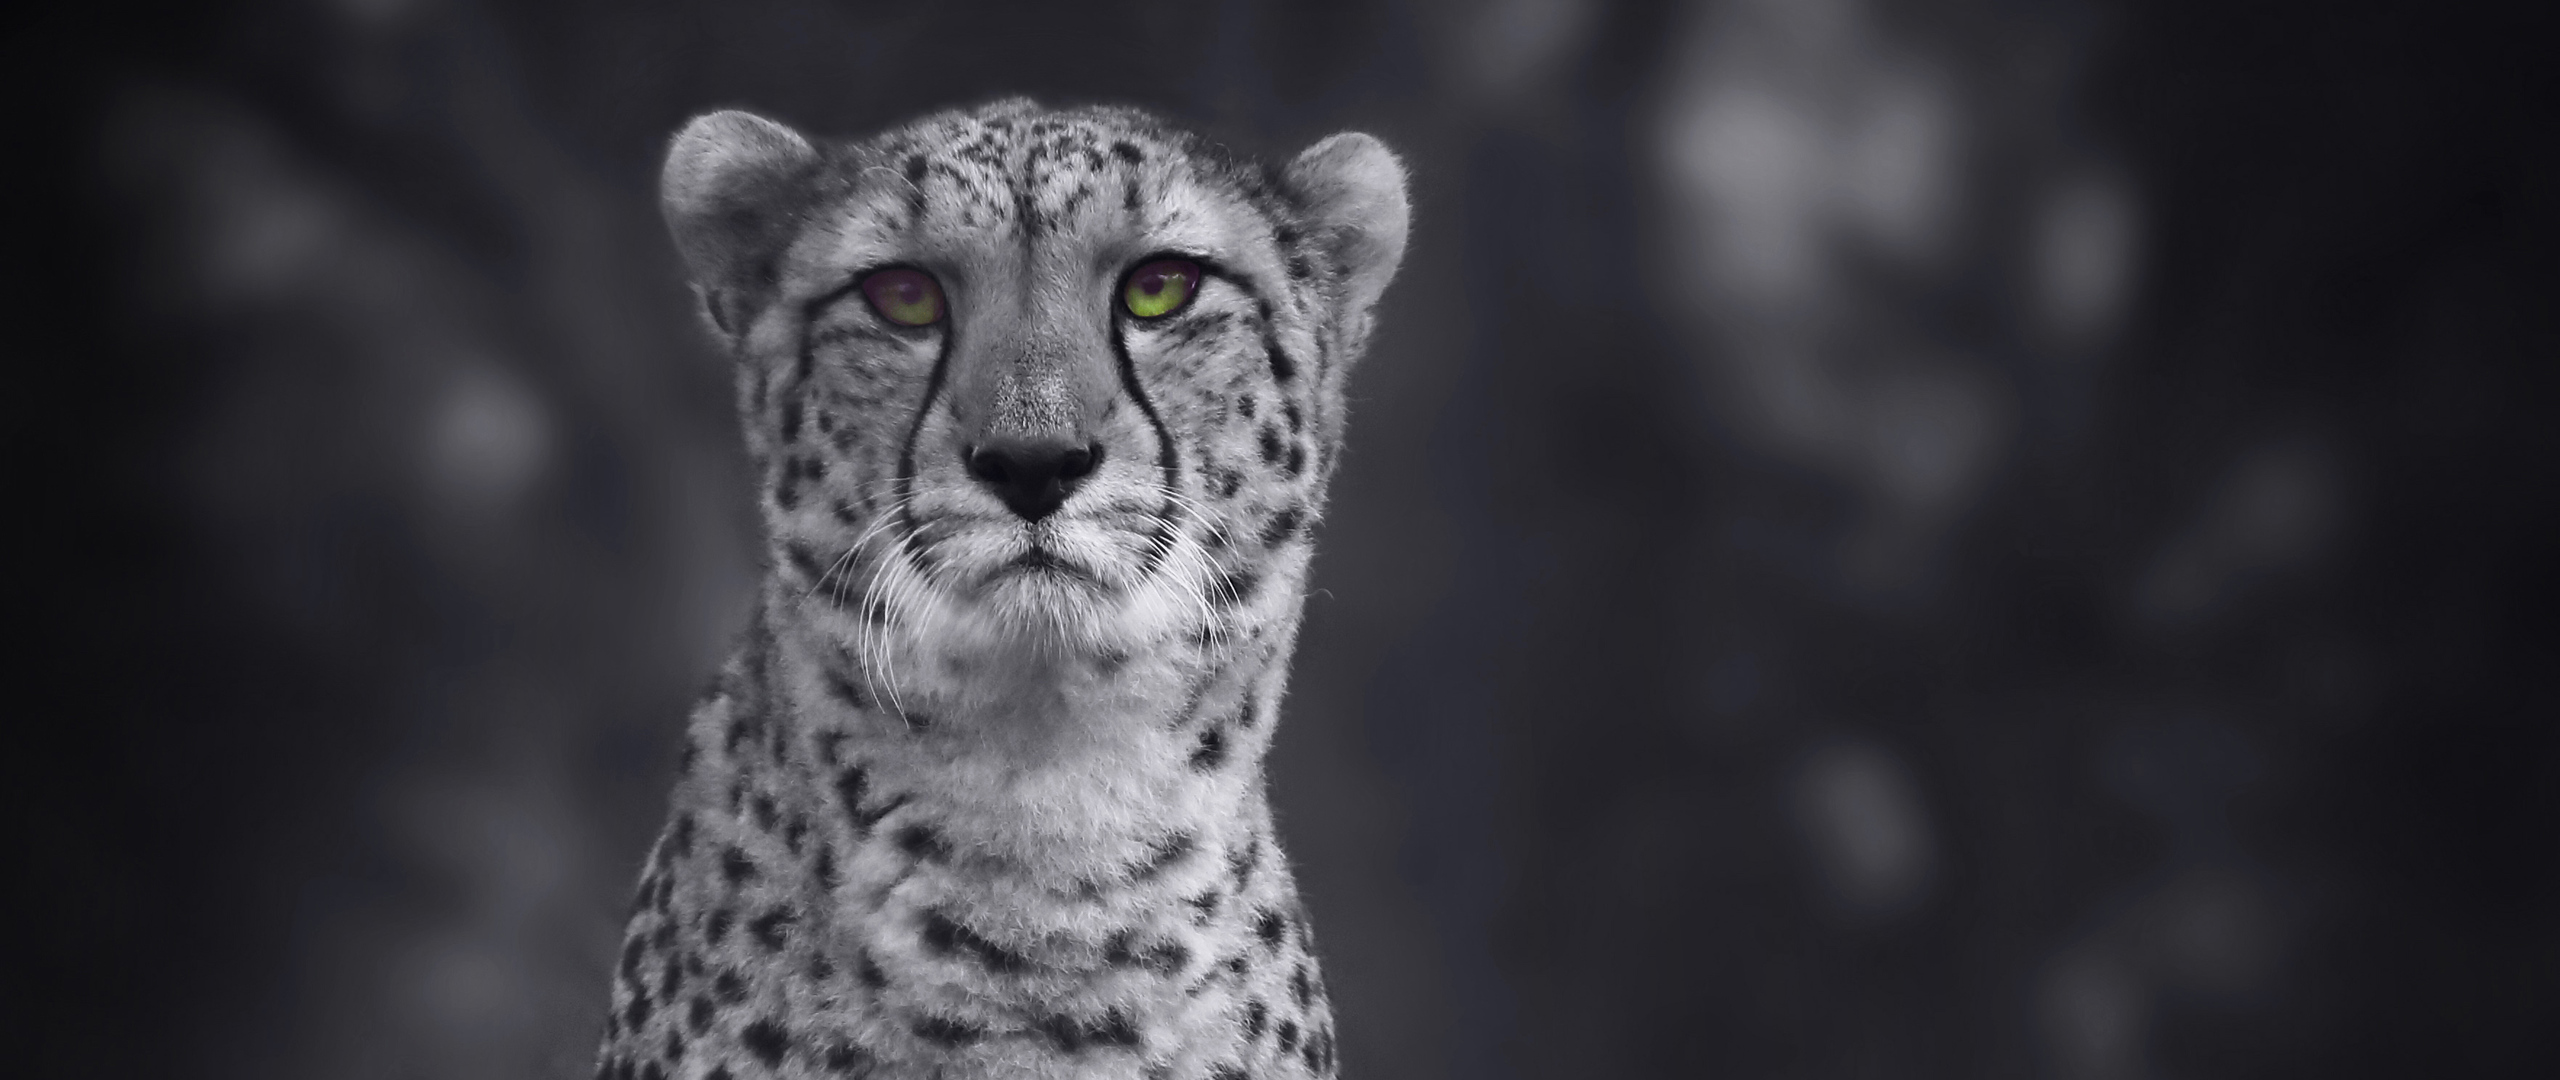 cheetah-monochrome-4k-th-2560x1080.jpg